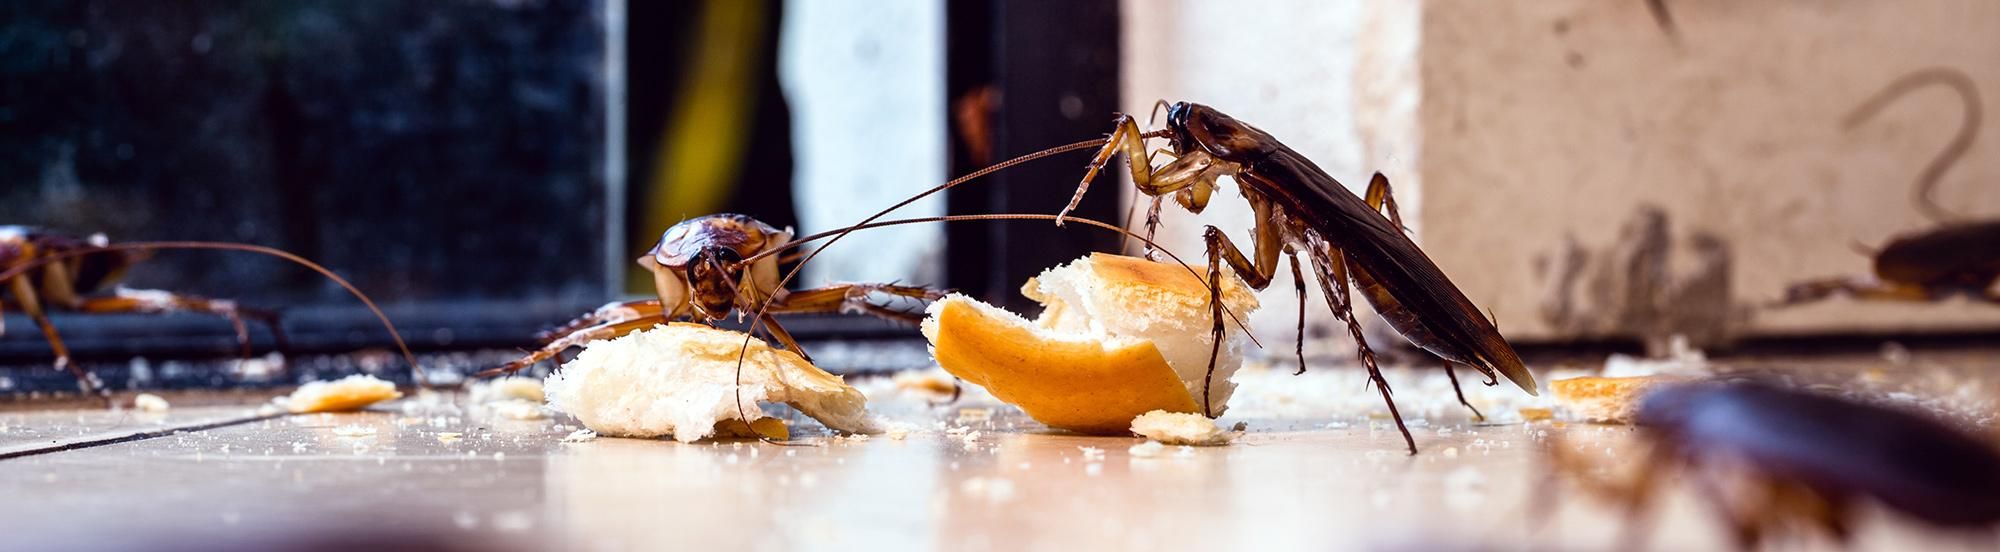 American cockroaches eating crumbs on kitchen floor